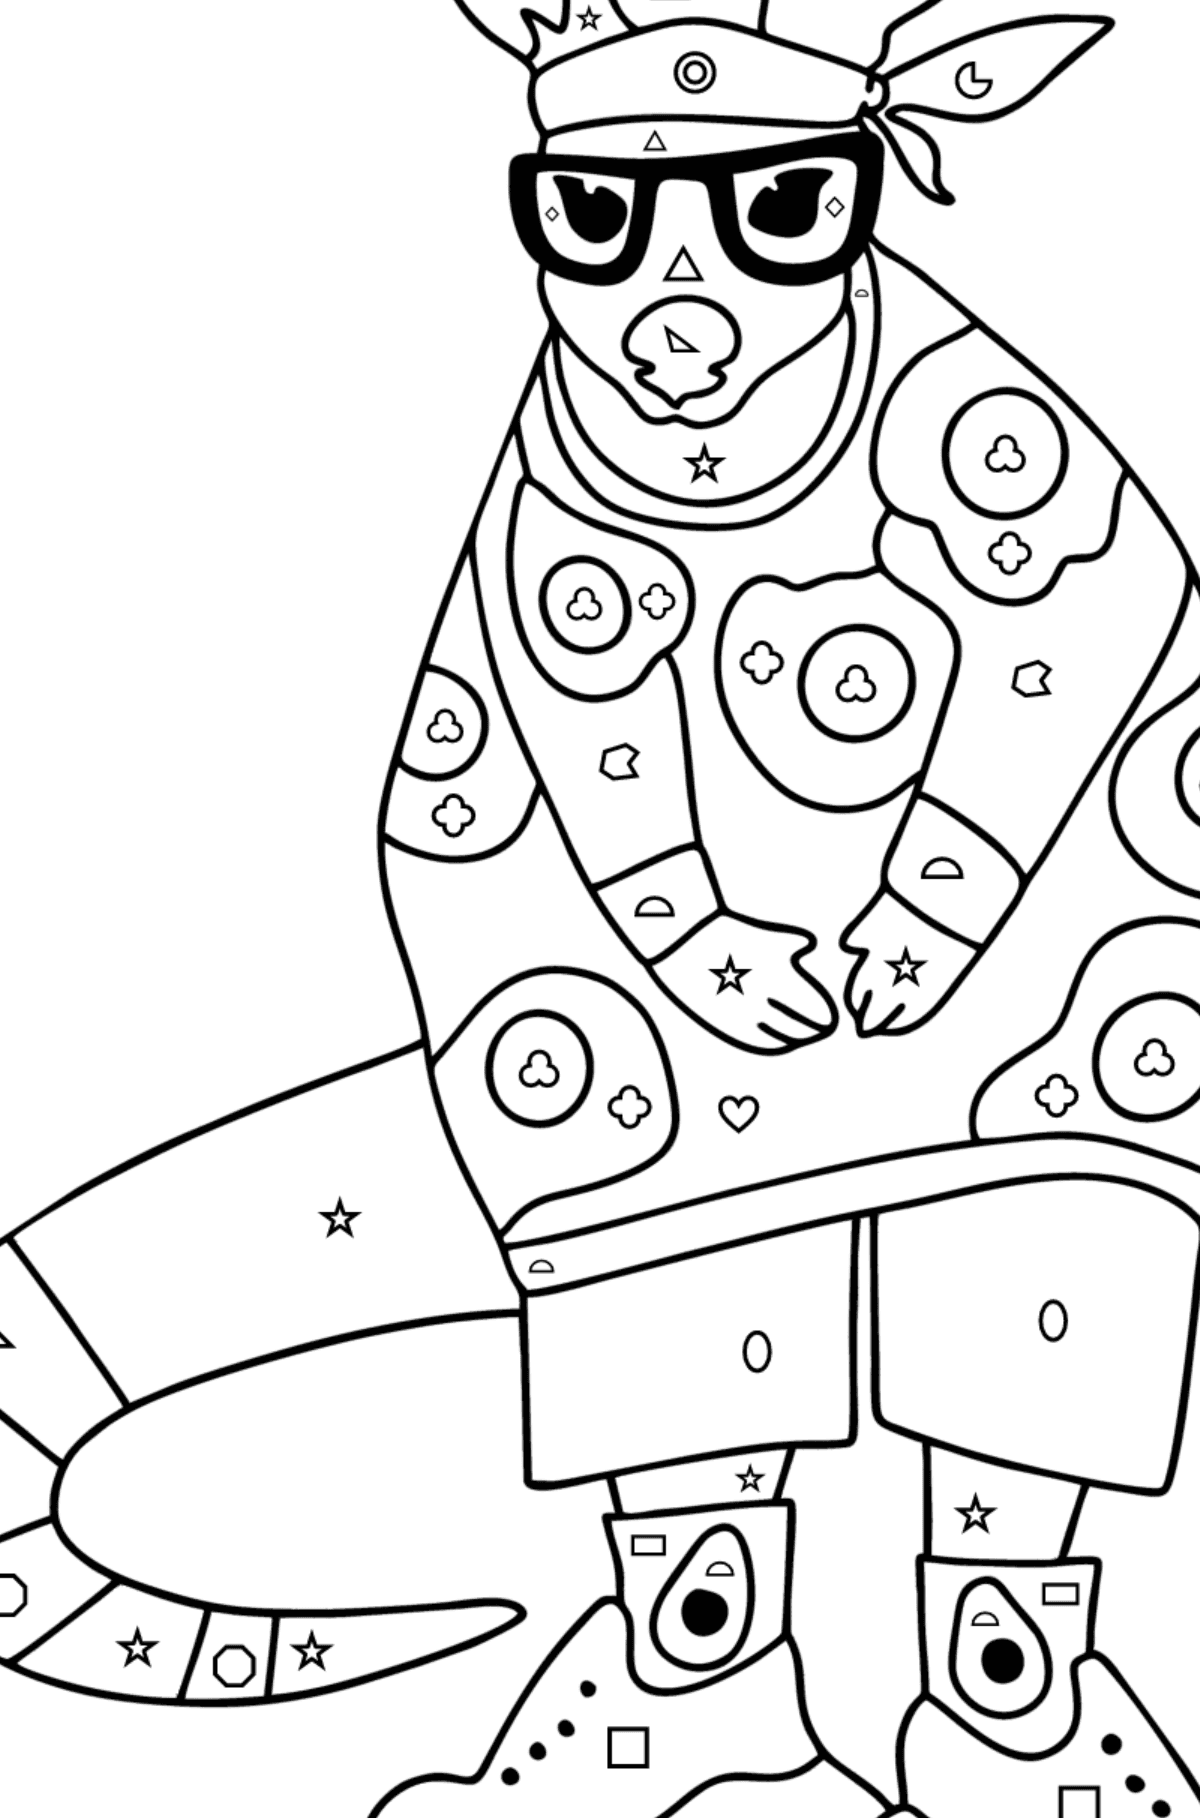 Omalovánka Kreslený milující klokan - Omalovánka podle Geometrických tvarů pro děti